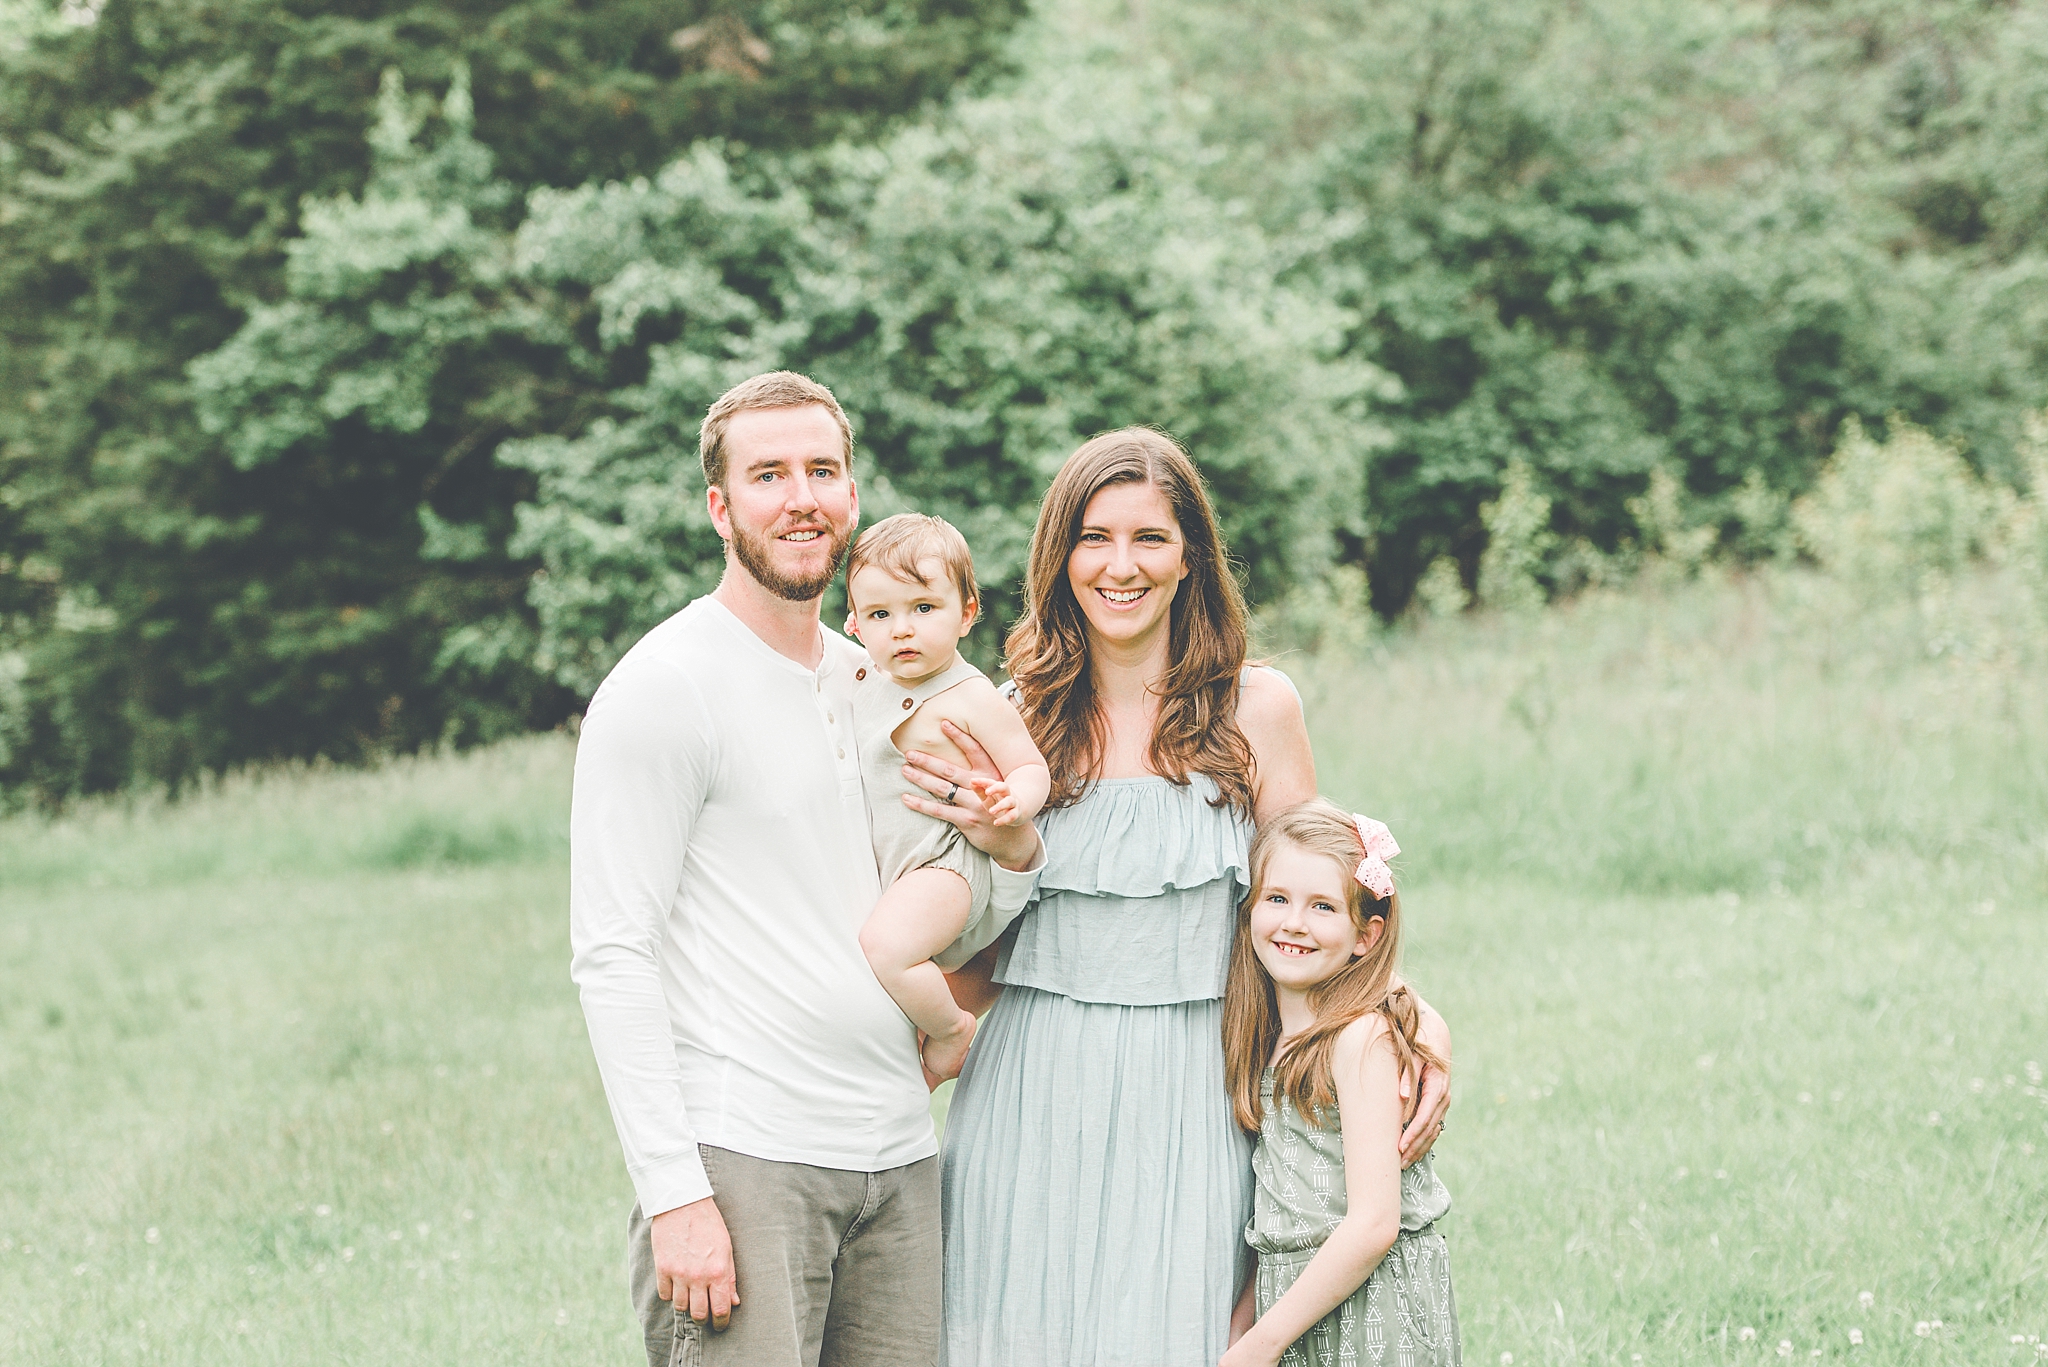 Springboro Ohio Baby Photography | The Price Family